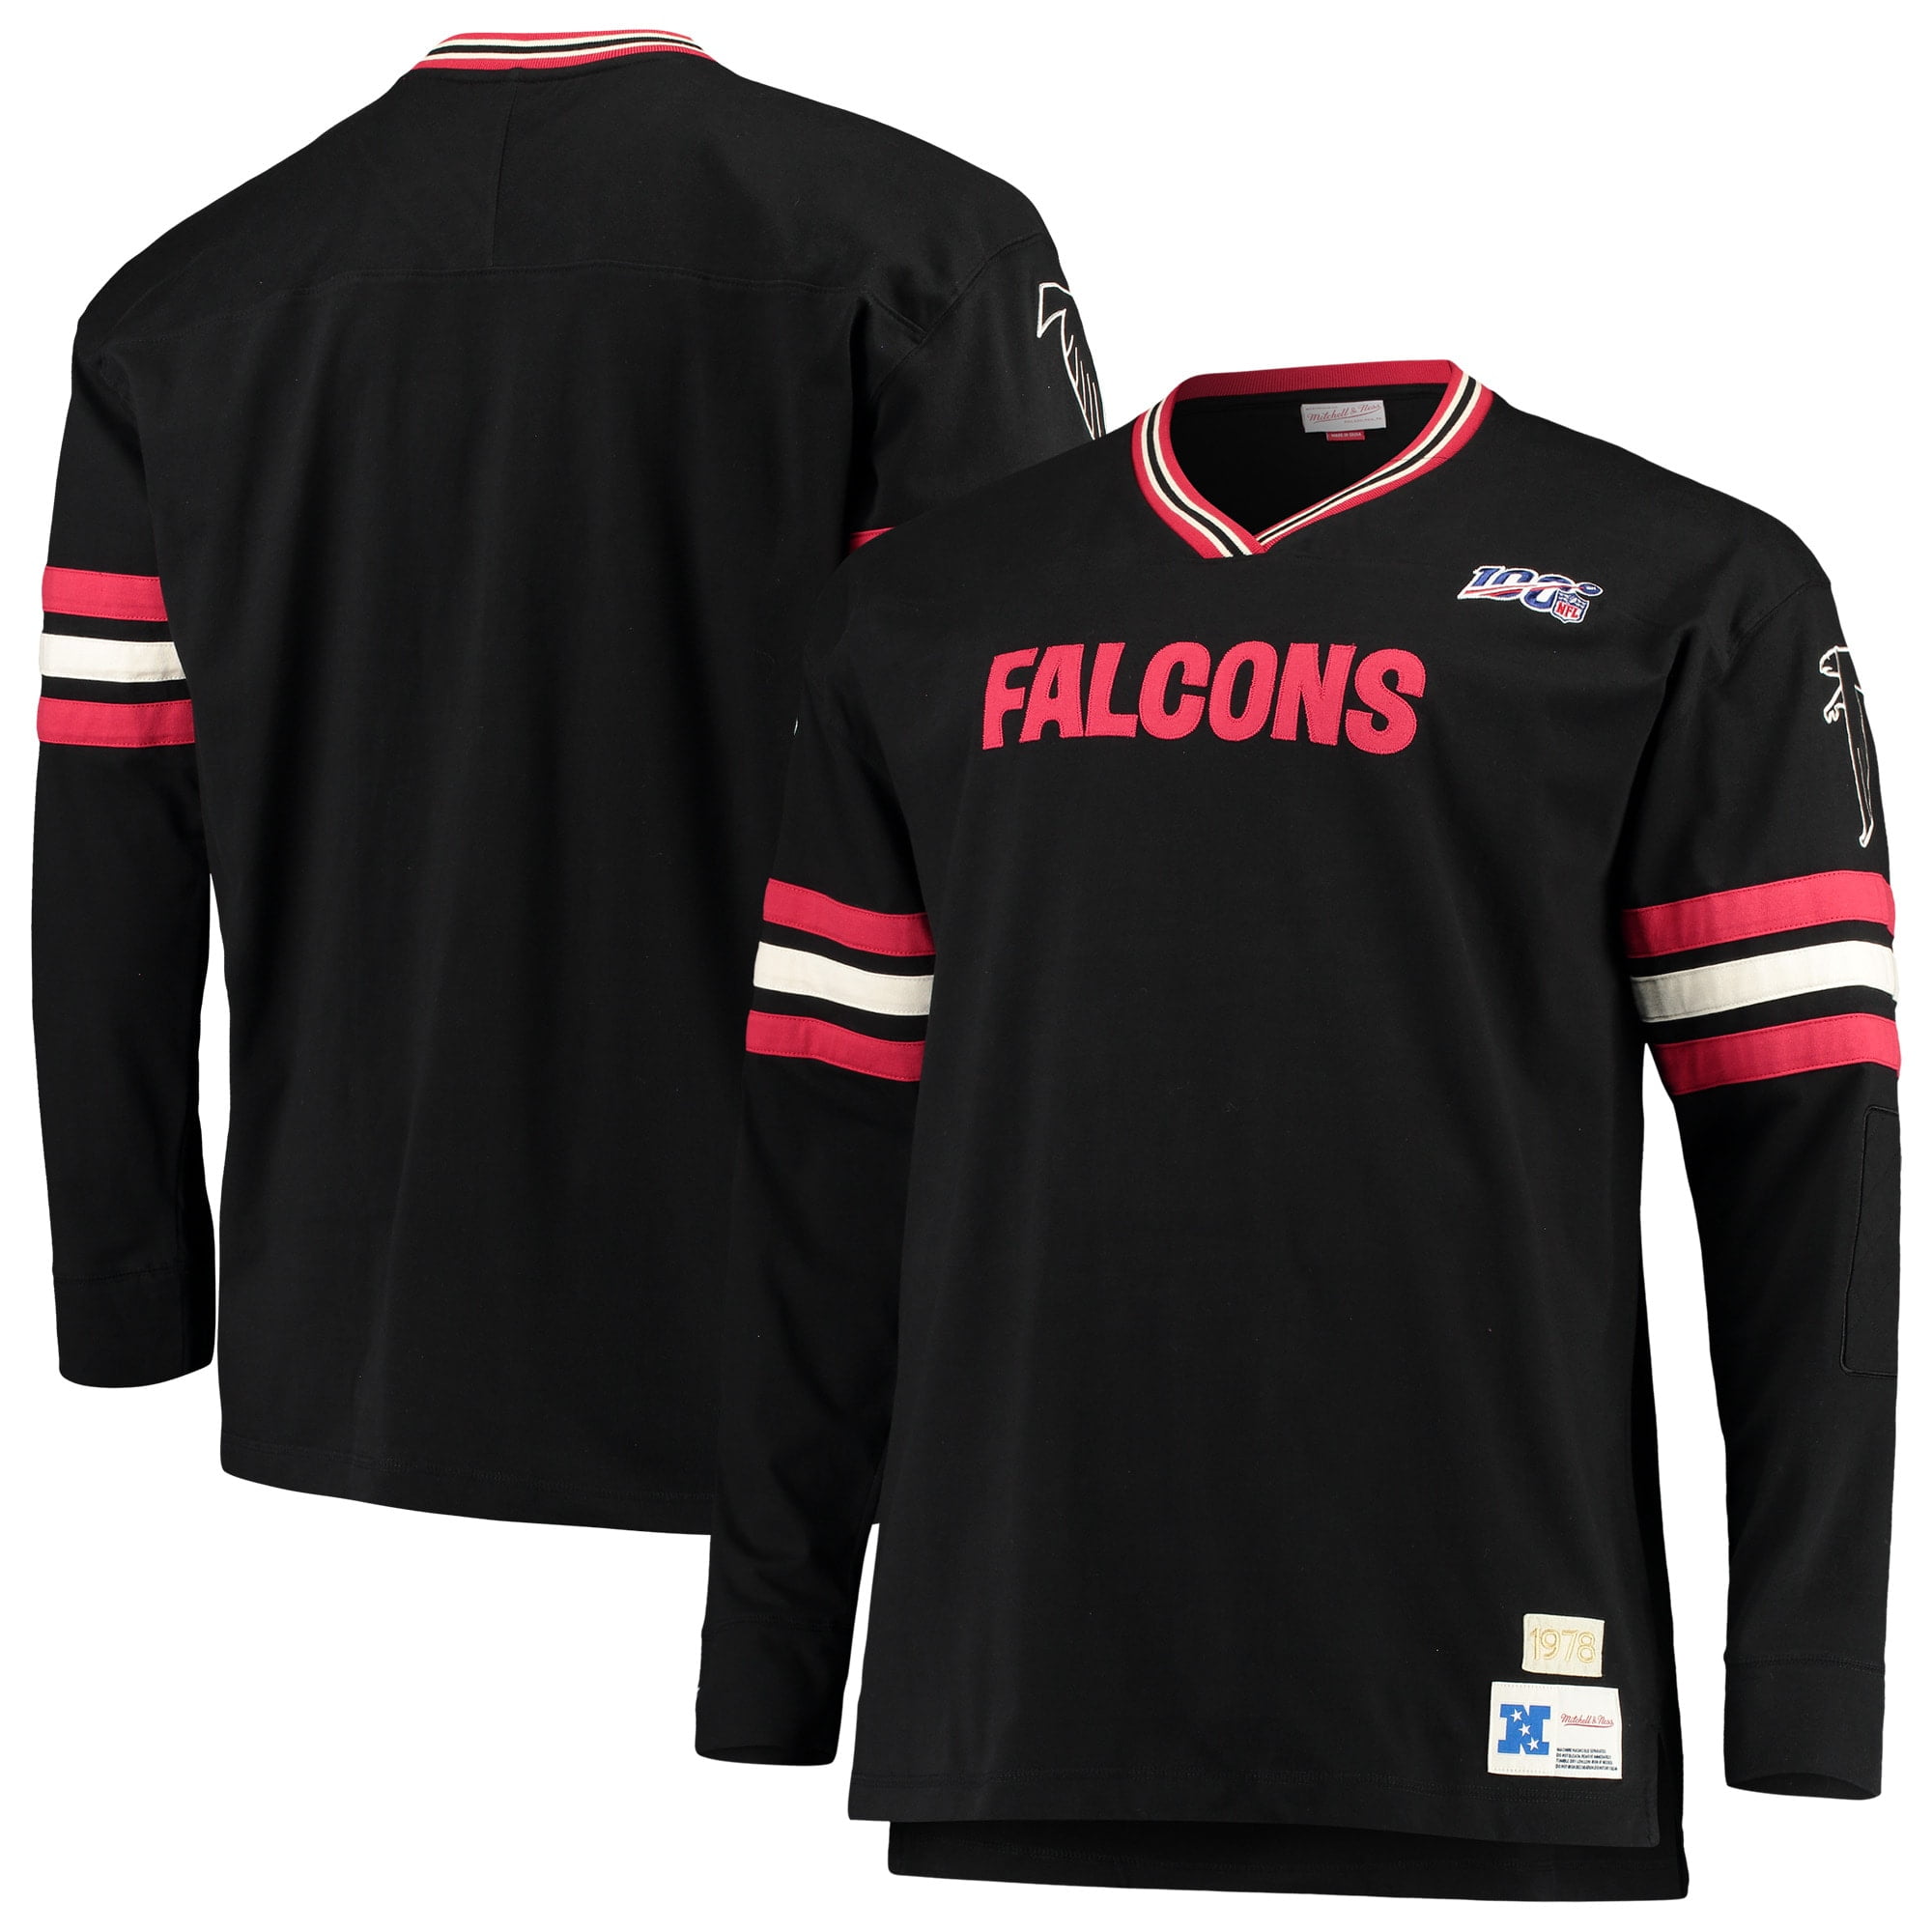 big and tall atlanta falcons jersey